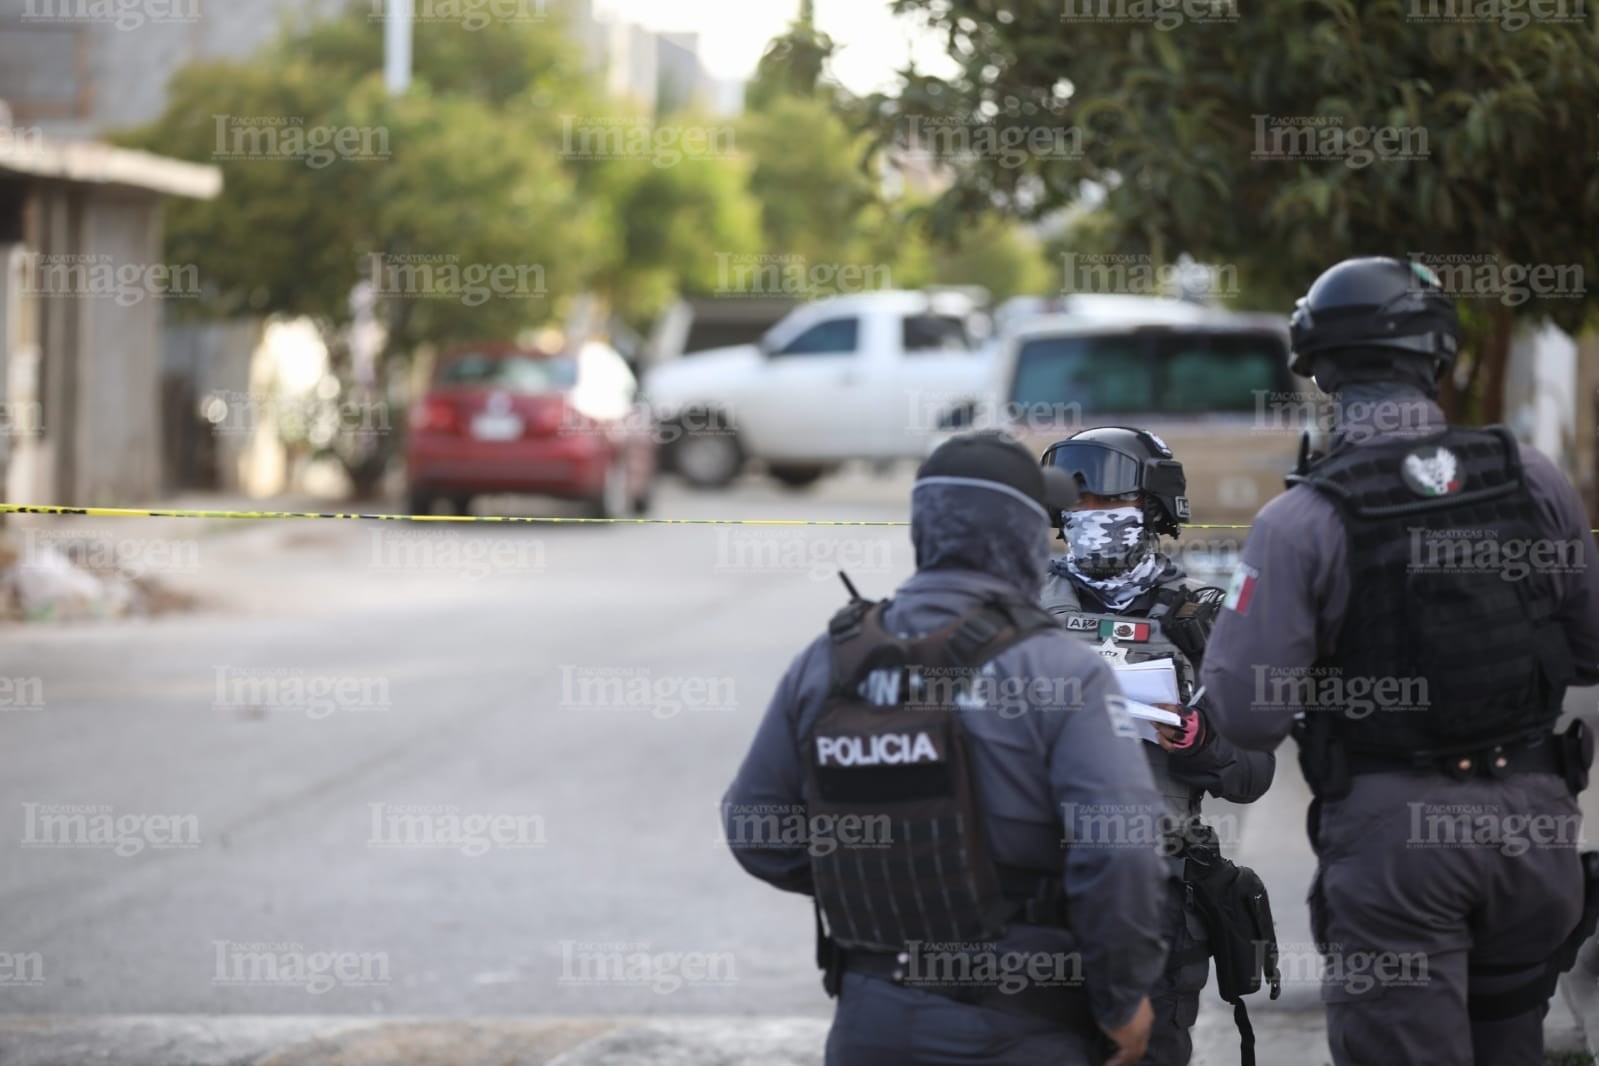 Policía municipales llegaron al lugar y acordonaron el área. | Foto: Imagen 